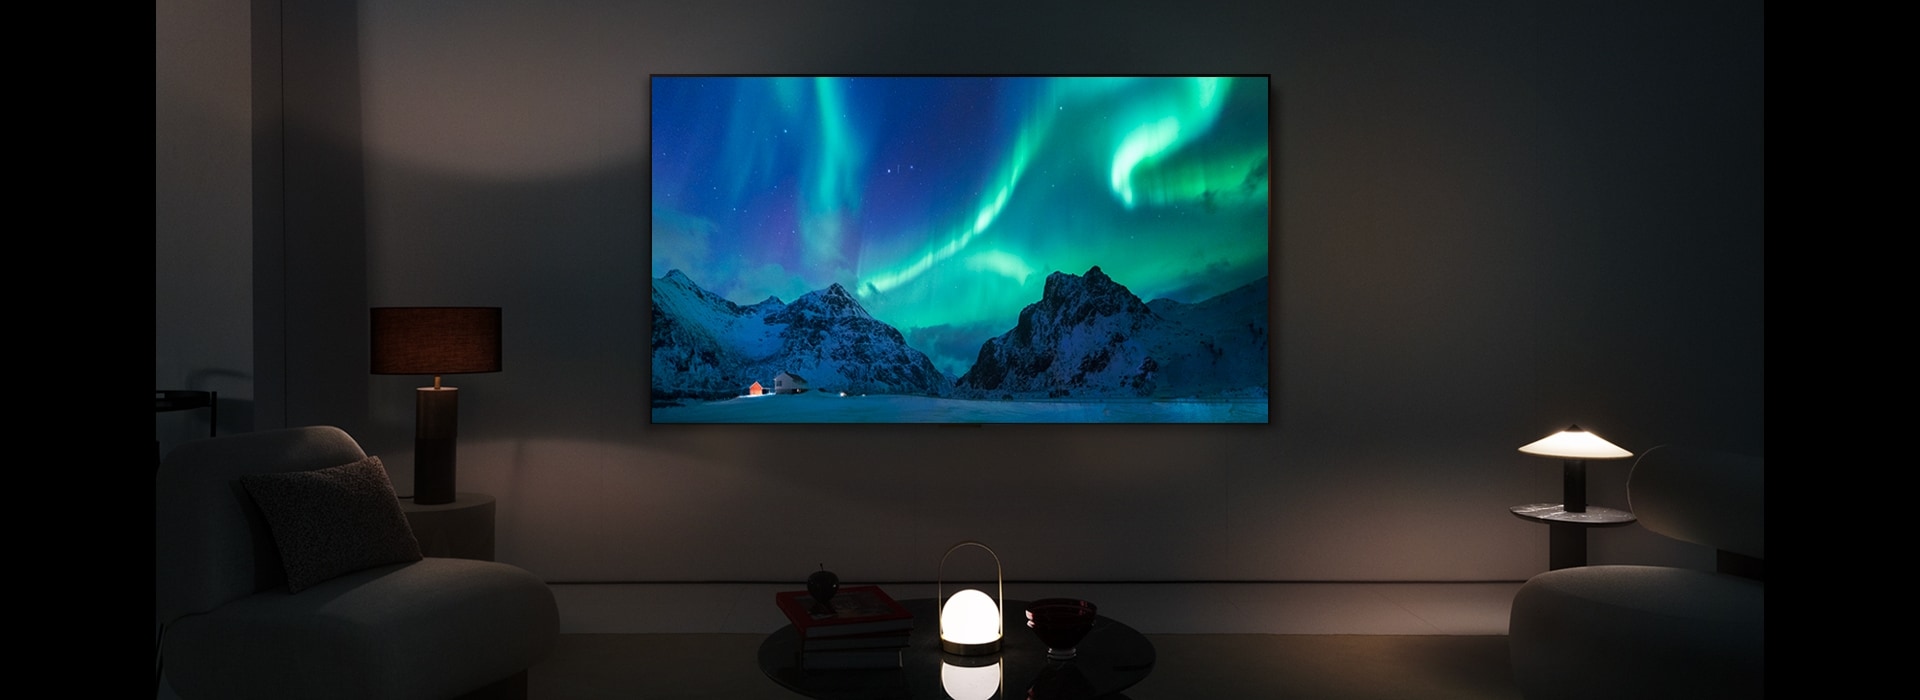 A imagem de uma LG TV e LG Soundbar num espaço habitacional moderno durante a noite. A imagem do ecrã da aurora boreal é exibida com os níveis de brilho ideais.